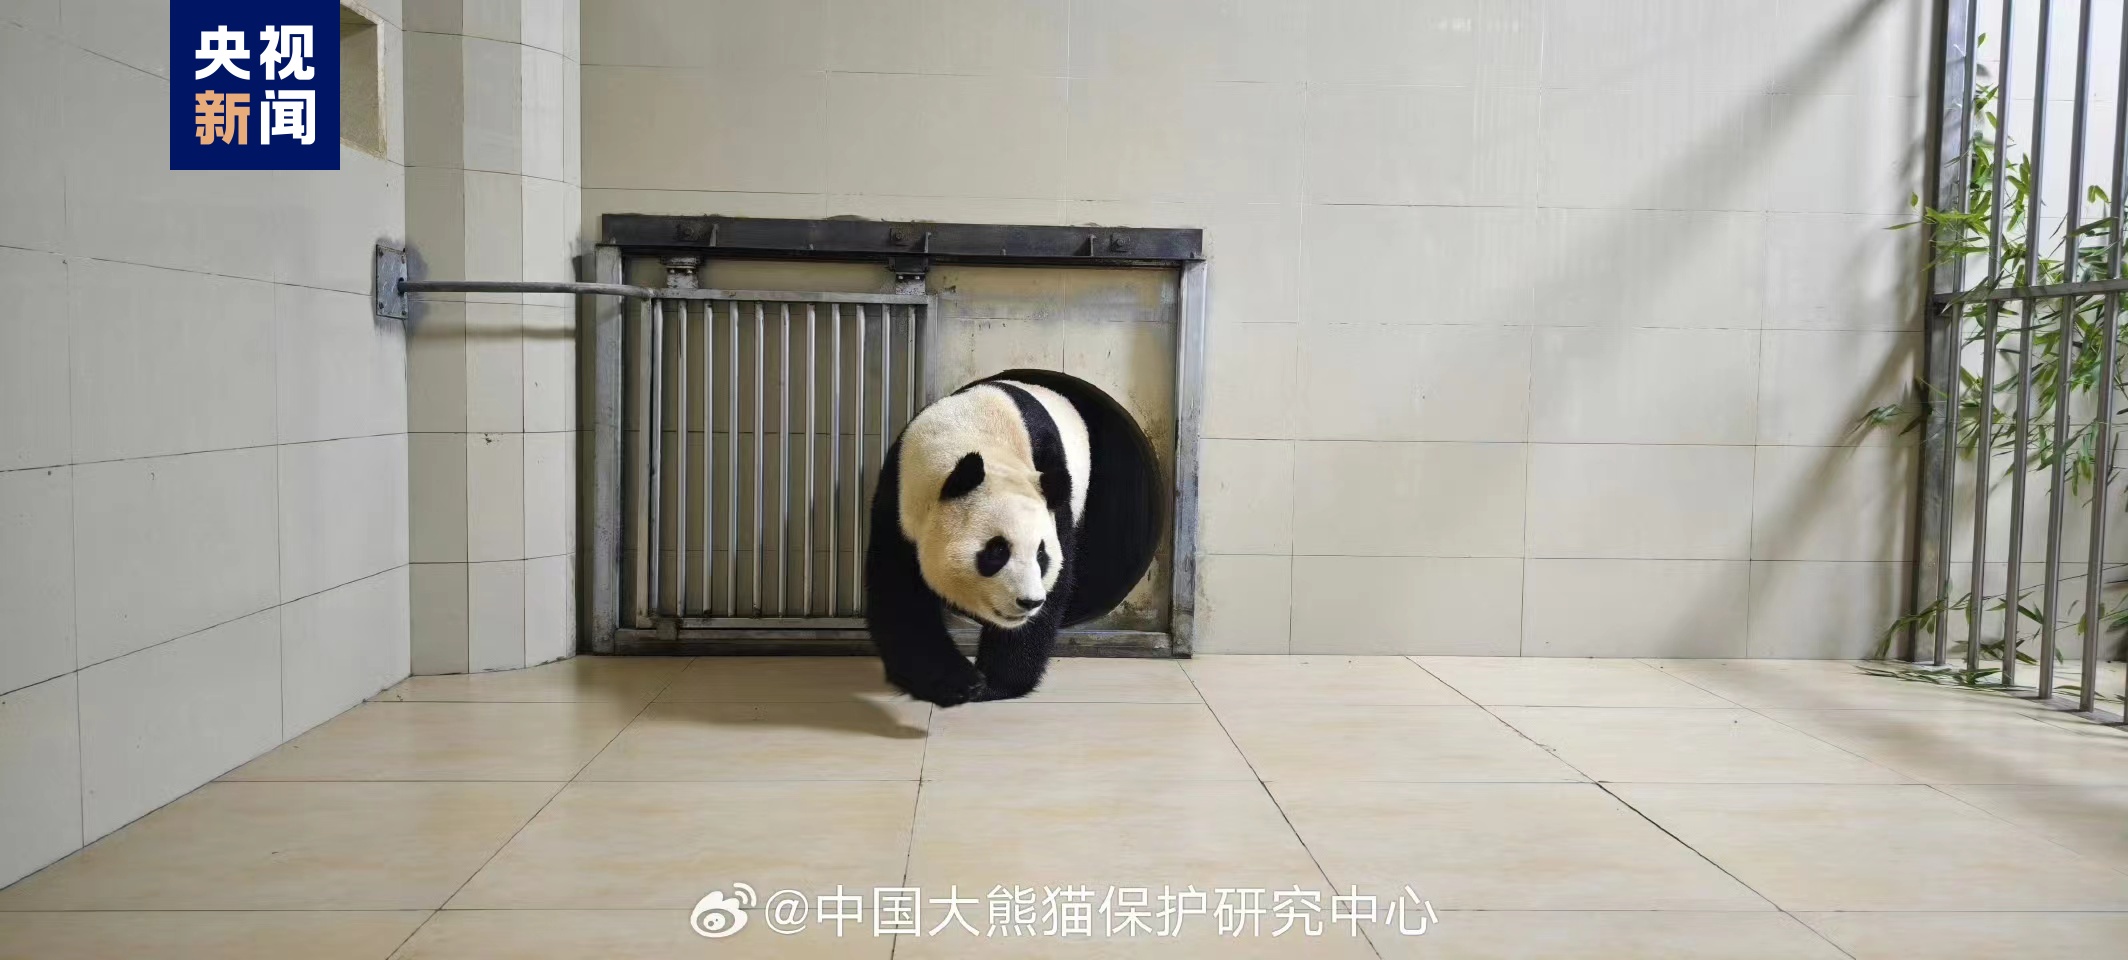 大熊猫“福宝”已顺遂抵家 形态精良